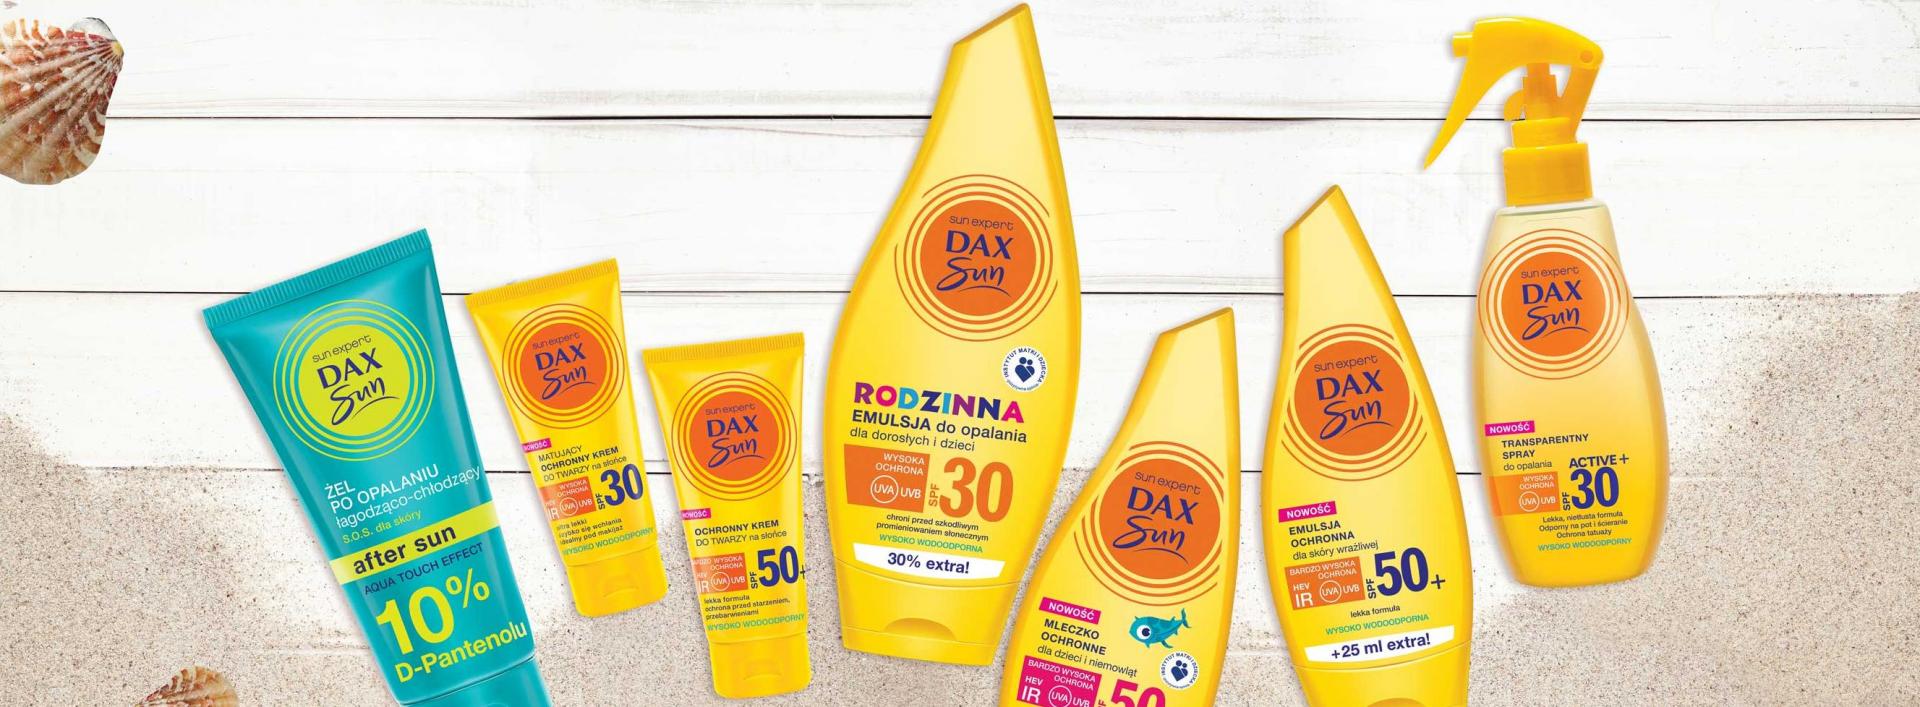 Jolanta Kamińska, Dax Sun, szeroka oferta, dostępność produktów i zaufanie do marki - to jest ważne w kategorii kosmetyków słonecznych